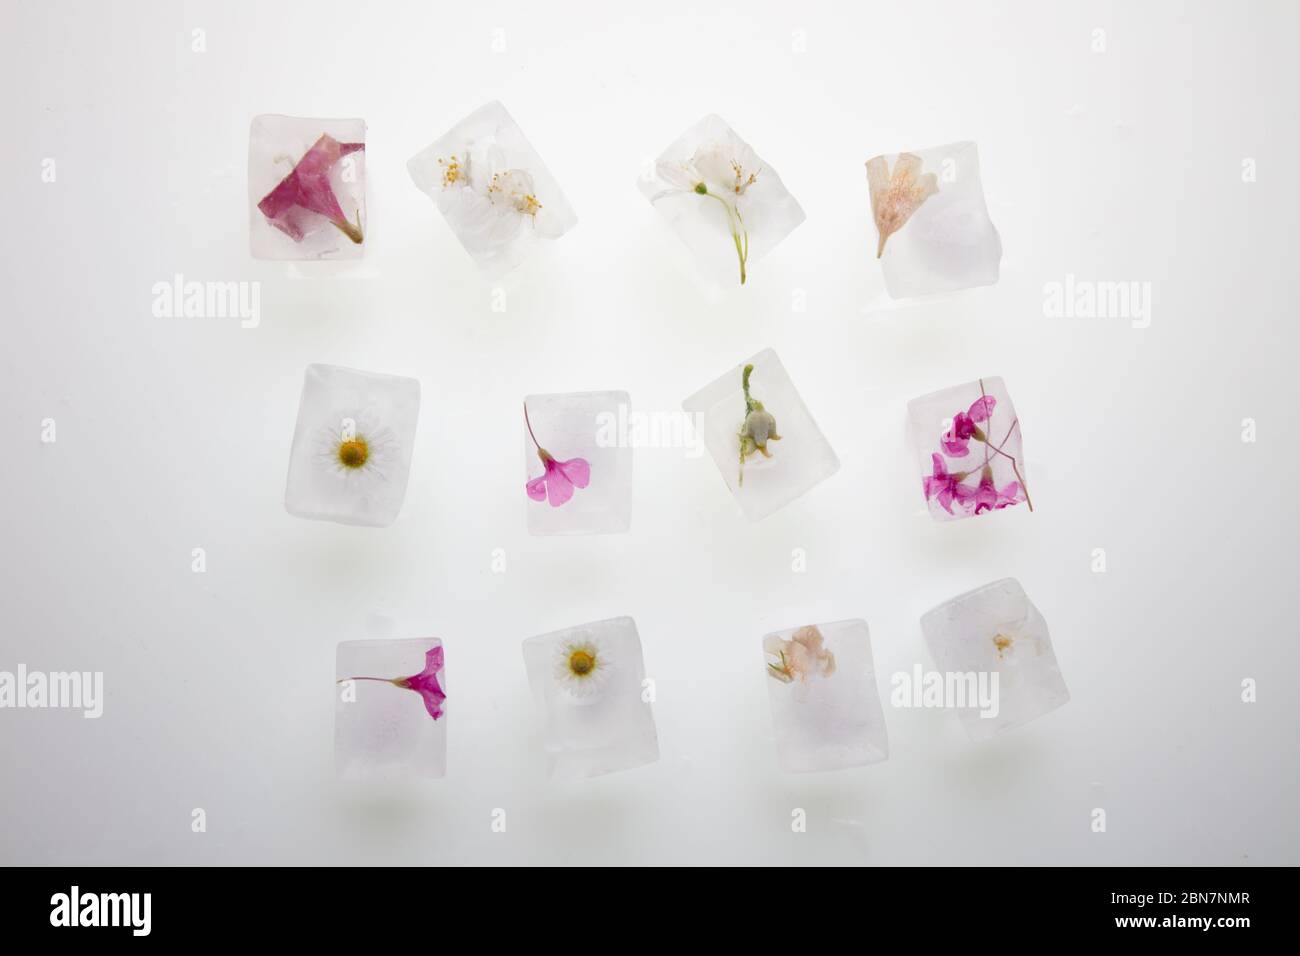 Ein schönes Foto von wilden Frühlingsblumen in transparenten Eiswürfeln von Wasser eingefroren, Studio Makro-Aufnahme, Draufsicht, flach legen Stockfoto